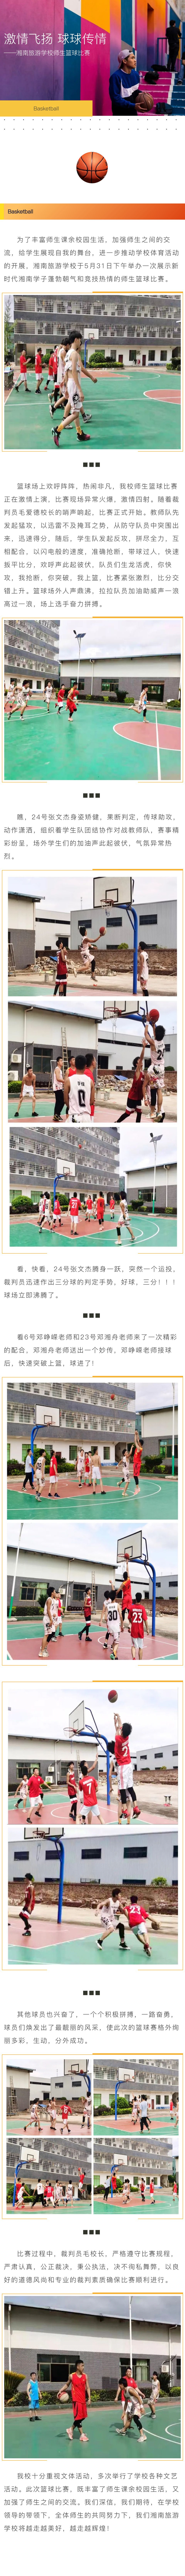 激情飞扬 球球传情 ——湘南旅游学校师生篮球比赛